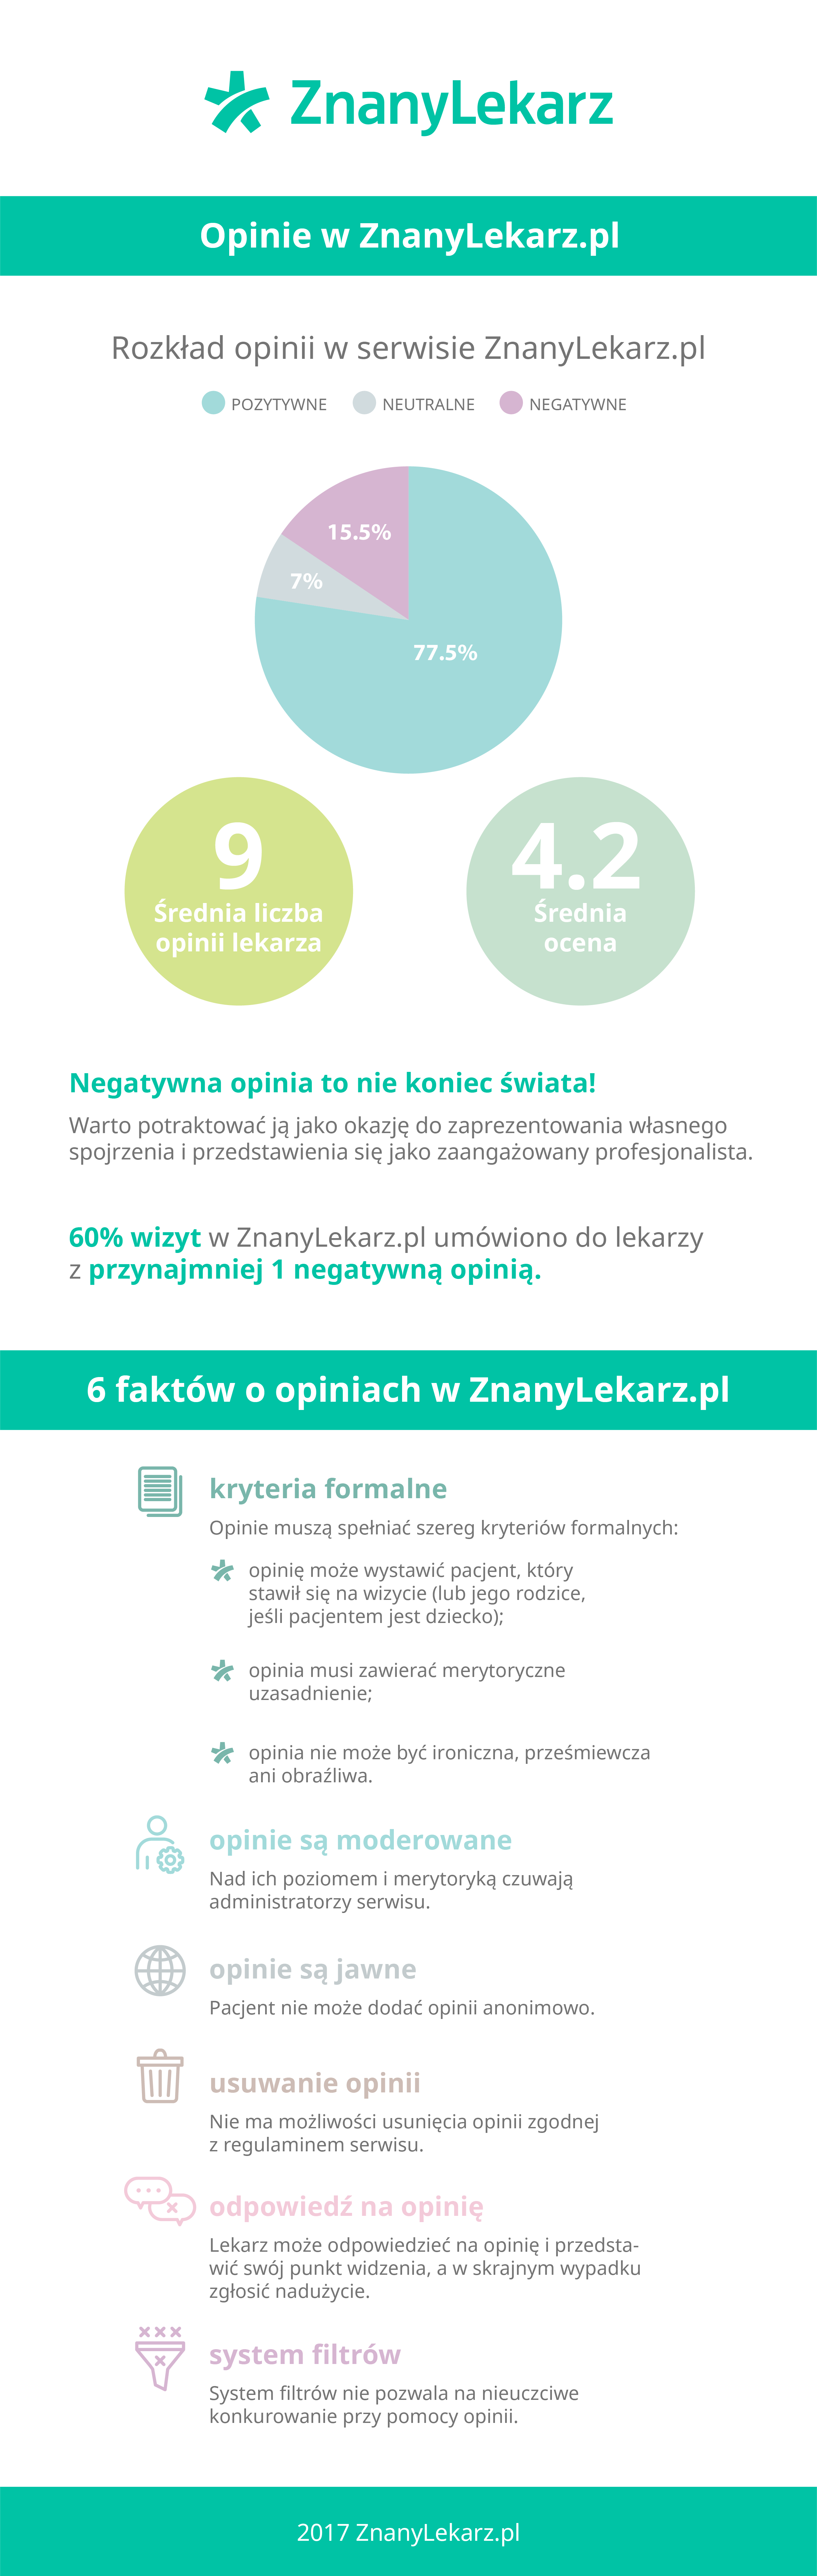 ZL prezentacja infografika 02 (3)